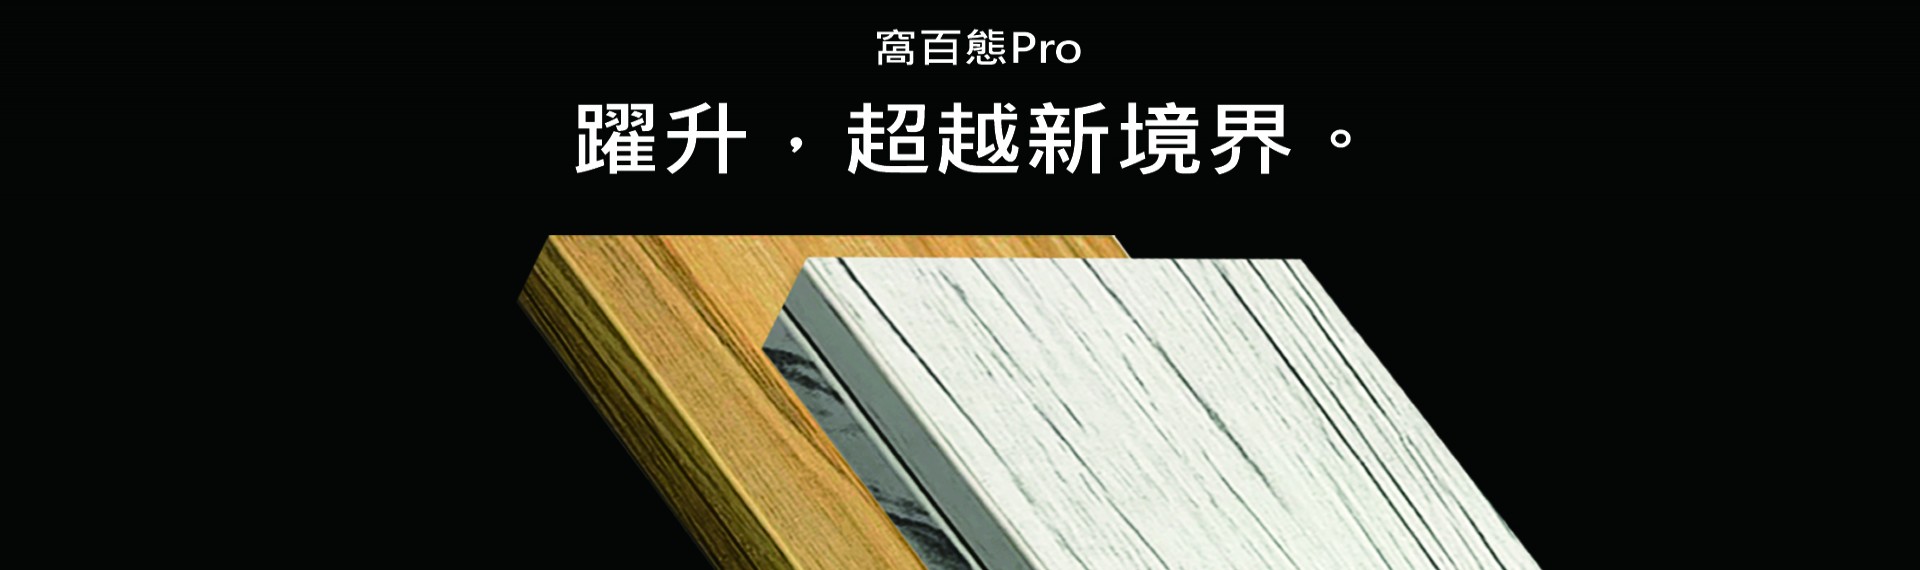 窩百態Pro每年都要來 ! 系統櫃冬季發表  功能、規格、材質文章總整理｜台灣登場